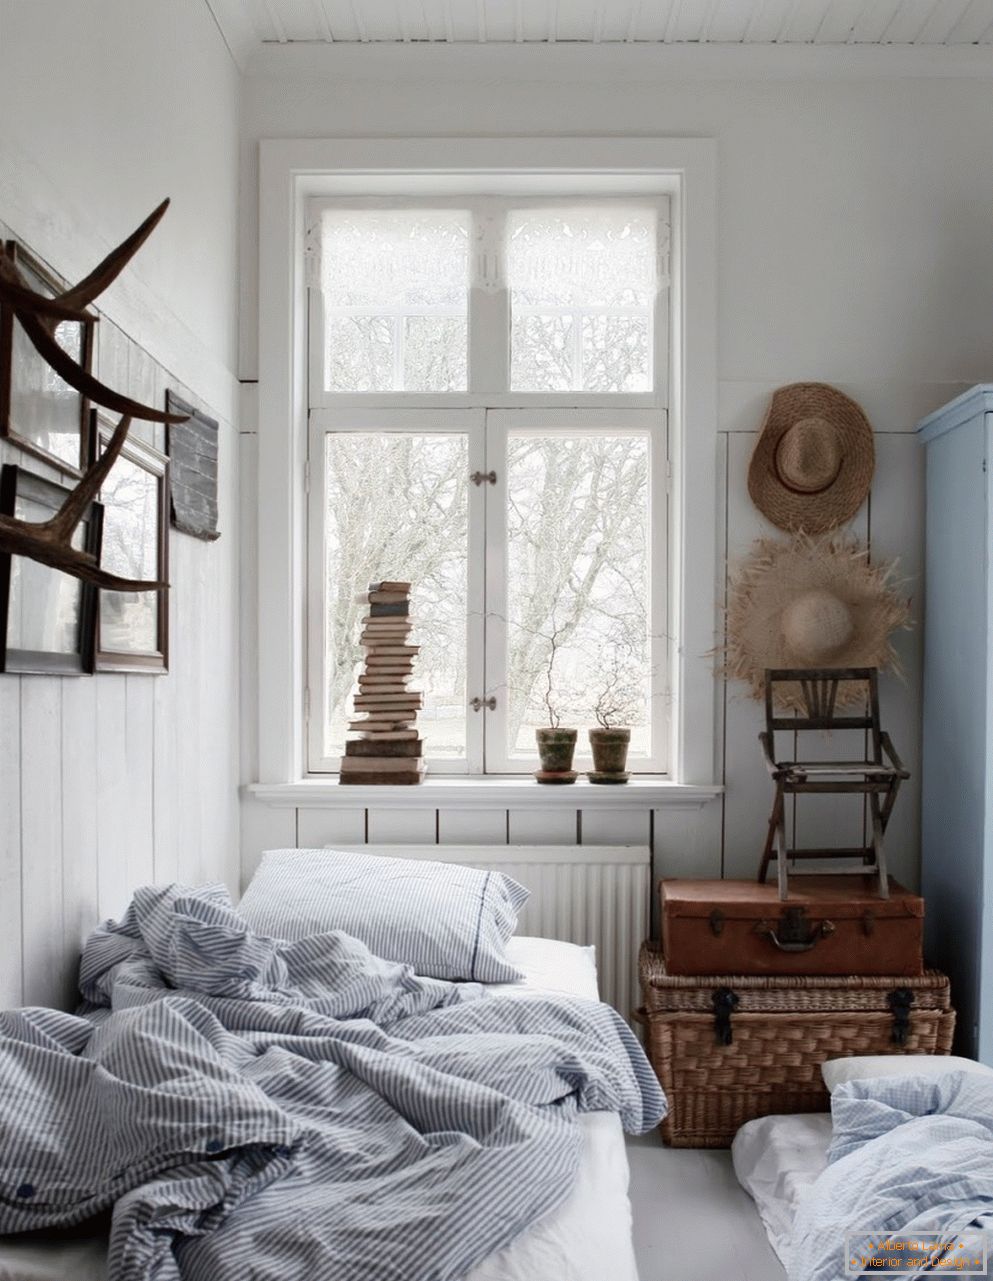 Stile scandinavo all'interno della camera da letto, sue caratteristiche e caratteristiche